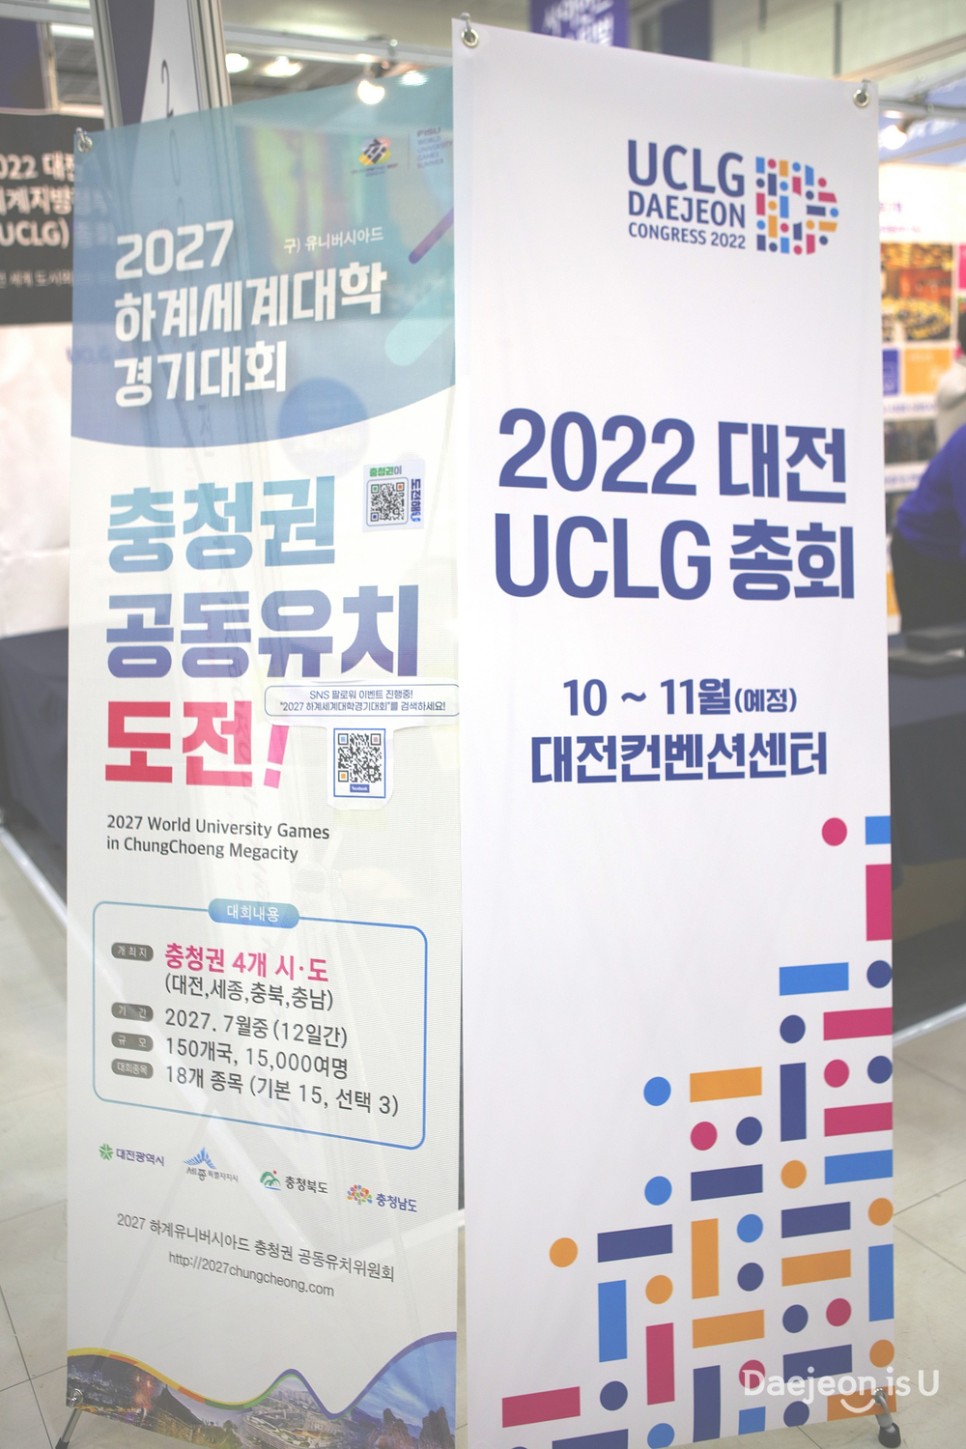 2022 대전 세계지방정부연합(UCLG) 총회 사이언스페스티벌 기간 홍보부스가동